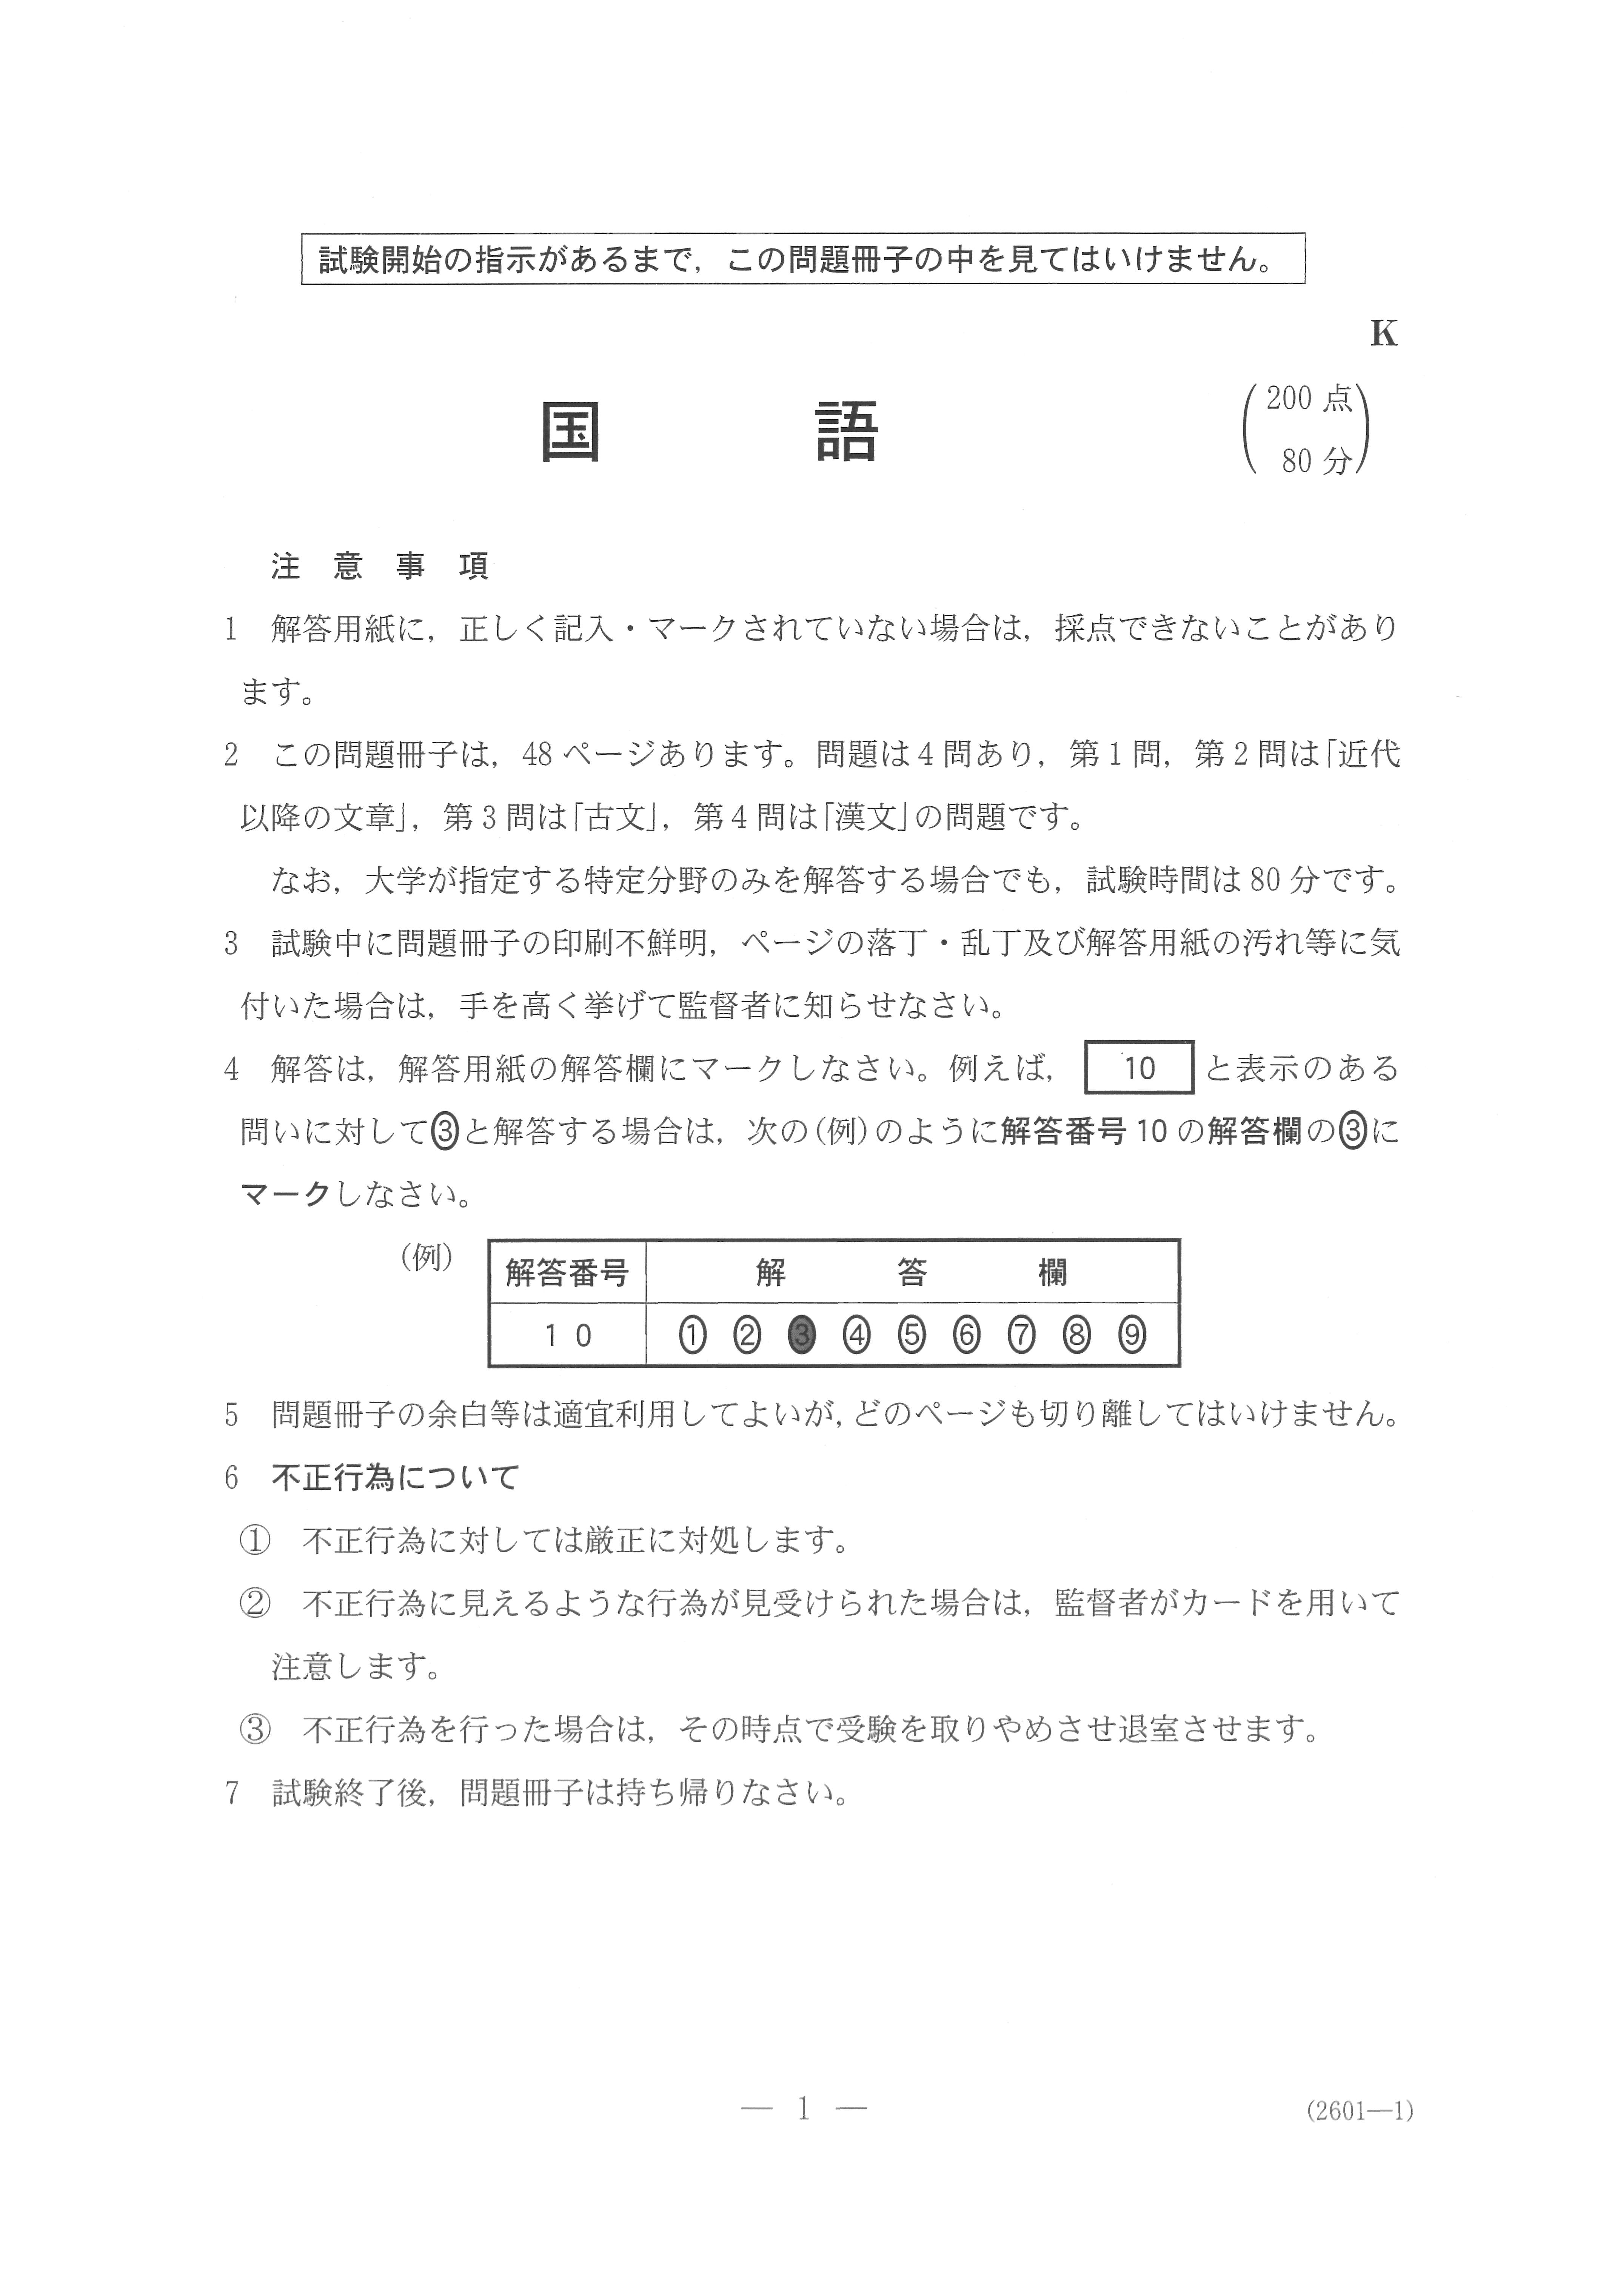 2019年 平成31年,令和元年 国語 大学入試センター試験過去問